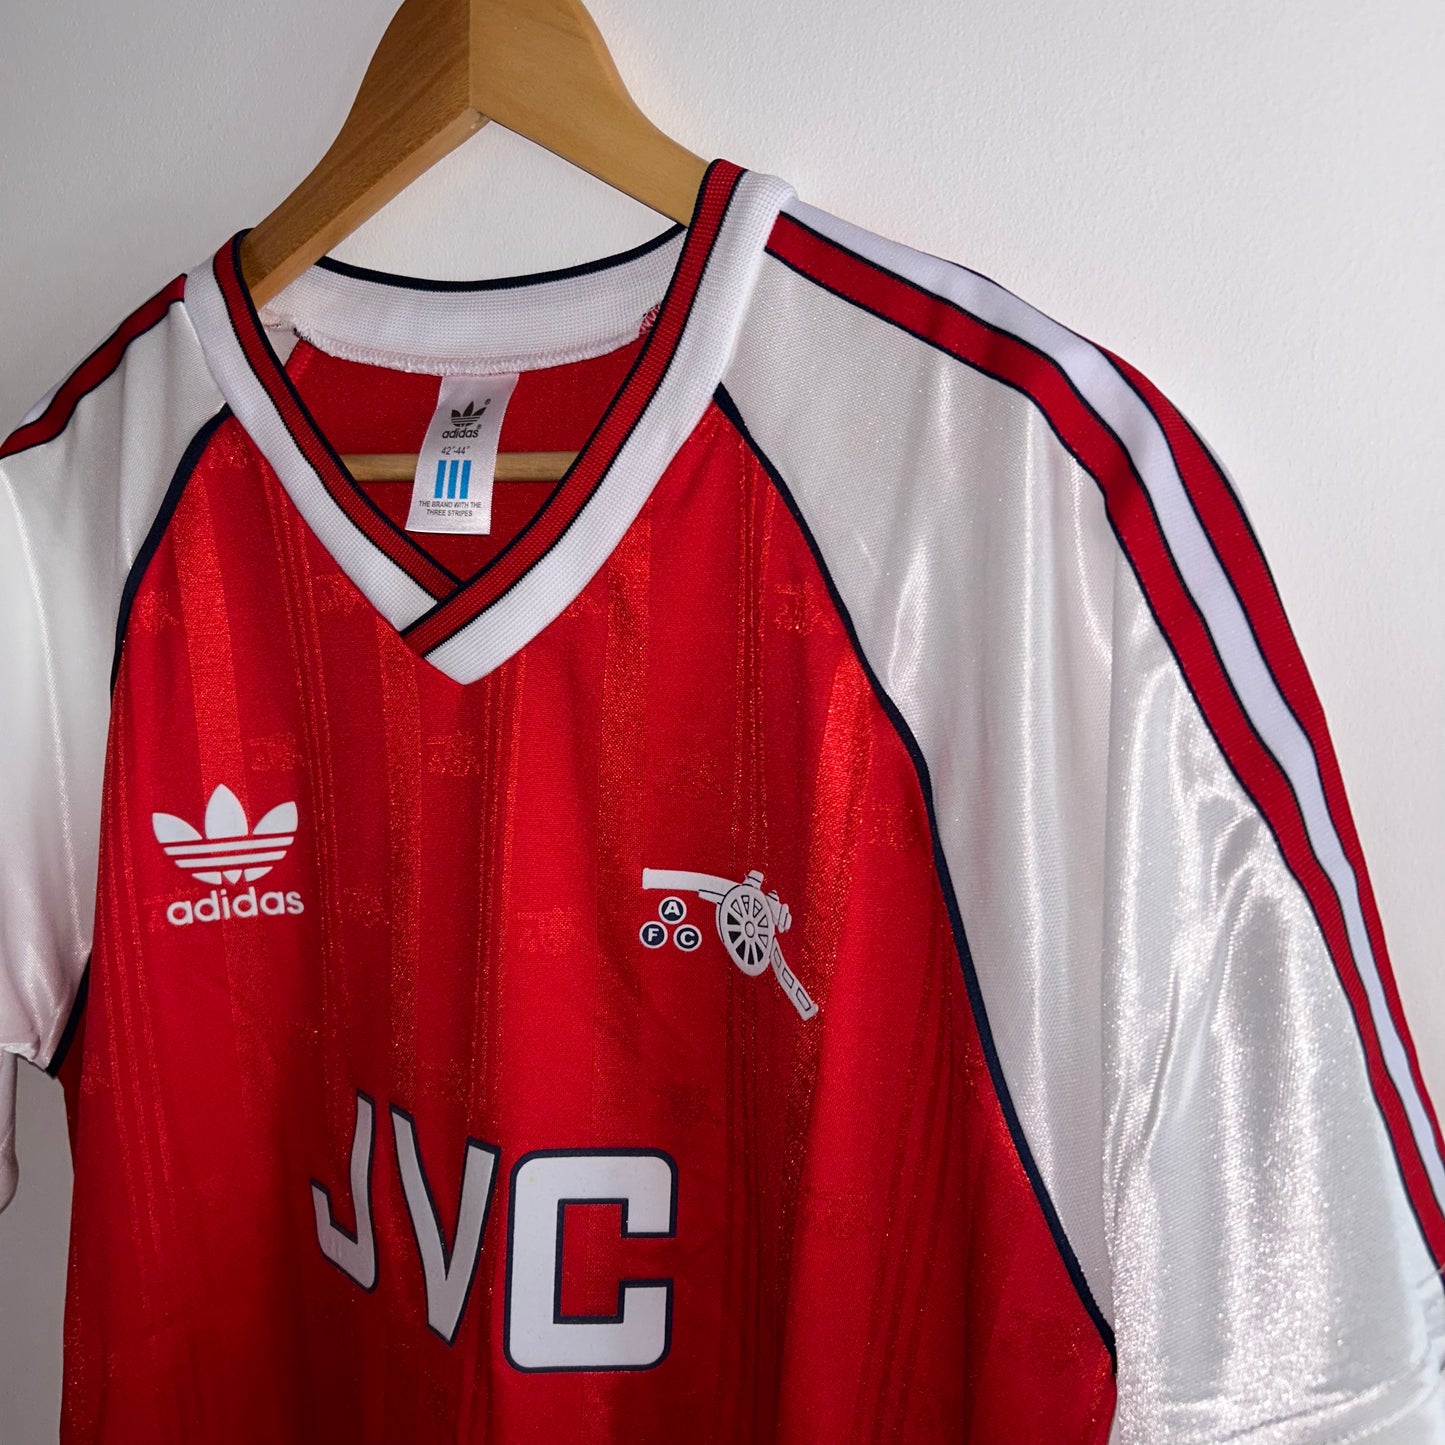 Arsenal 1988/89 Home Shirt